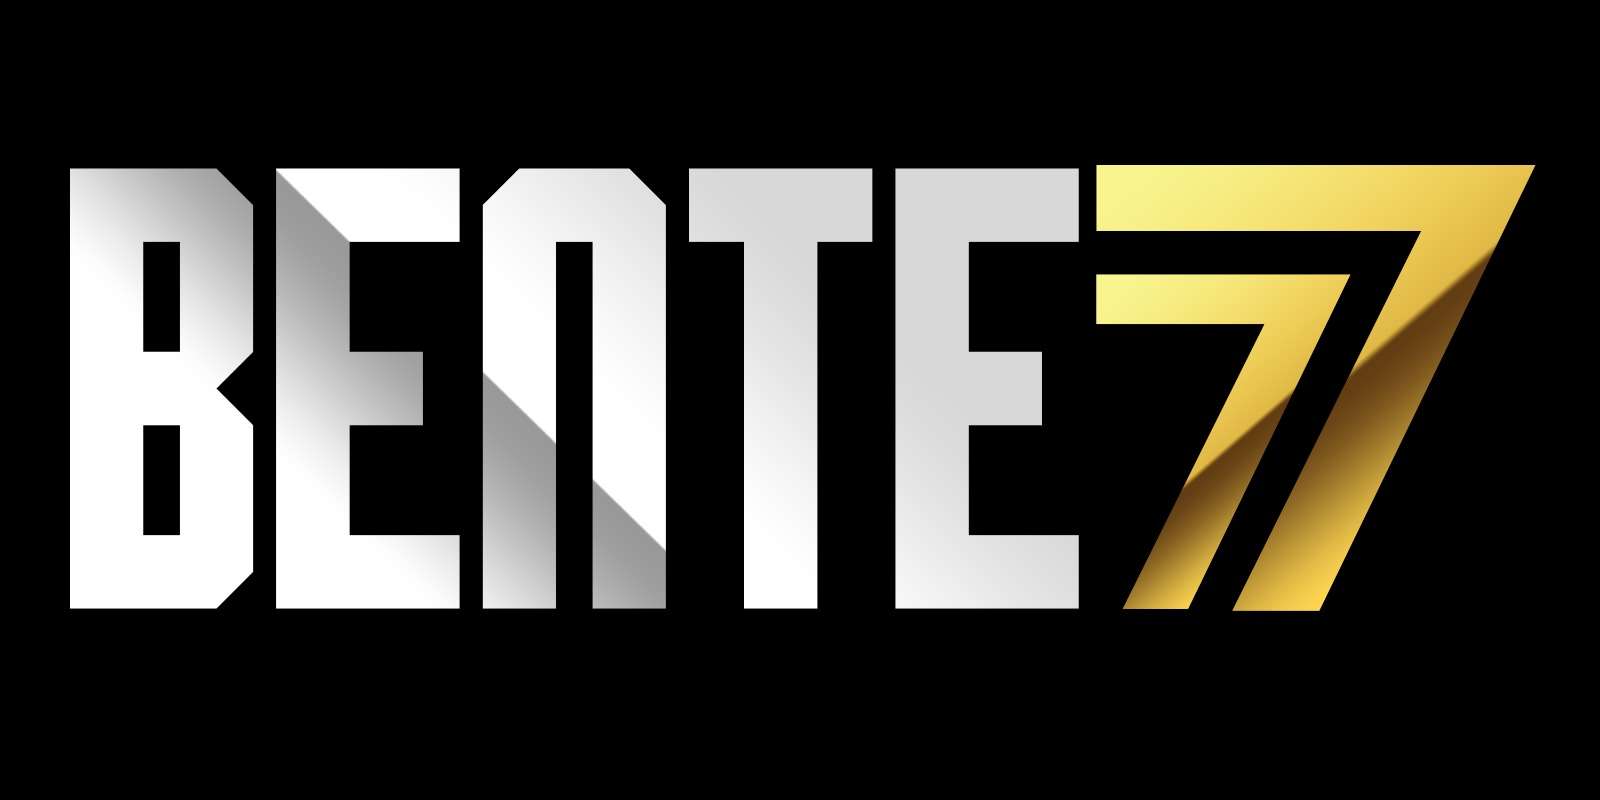 BENTE77 Online Casino